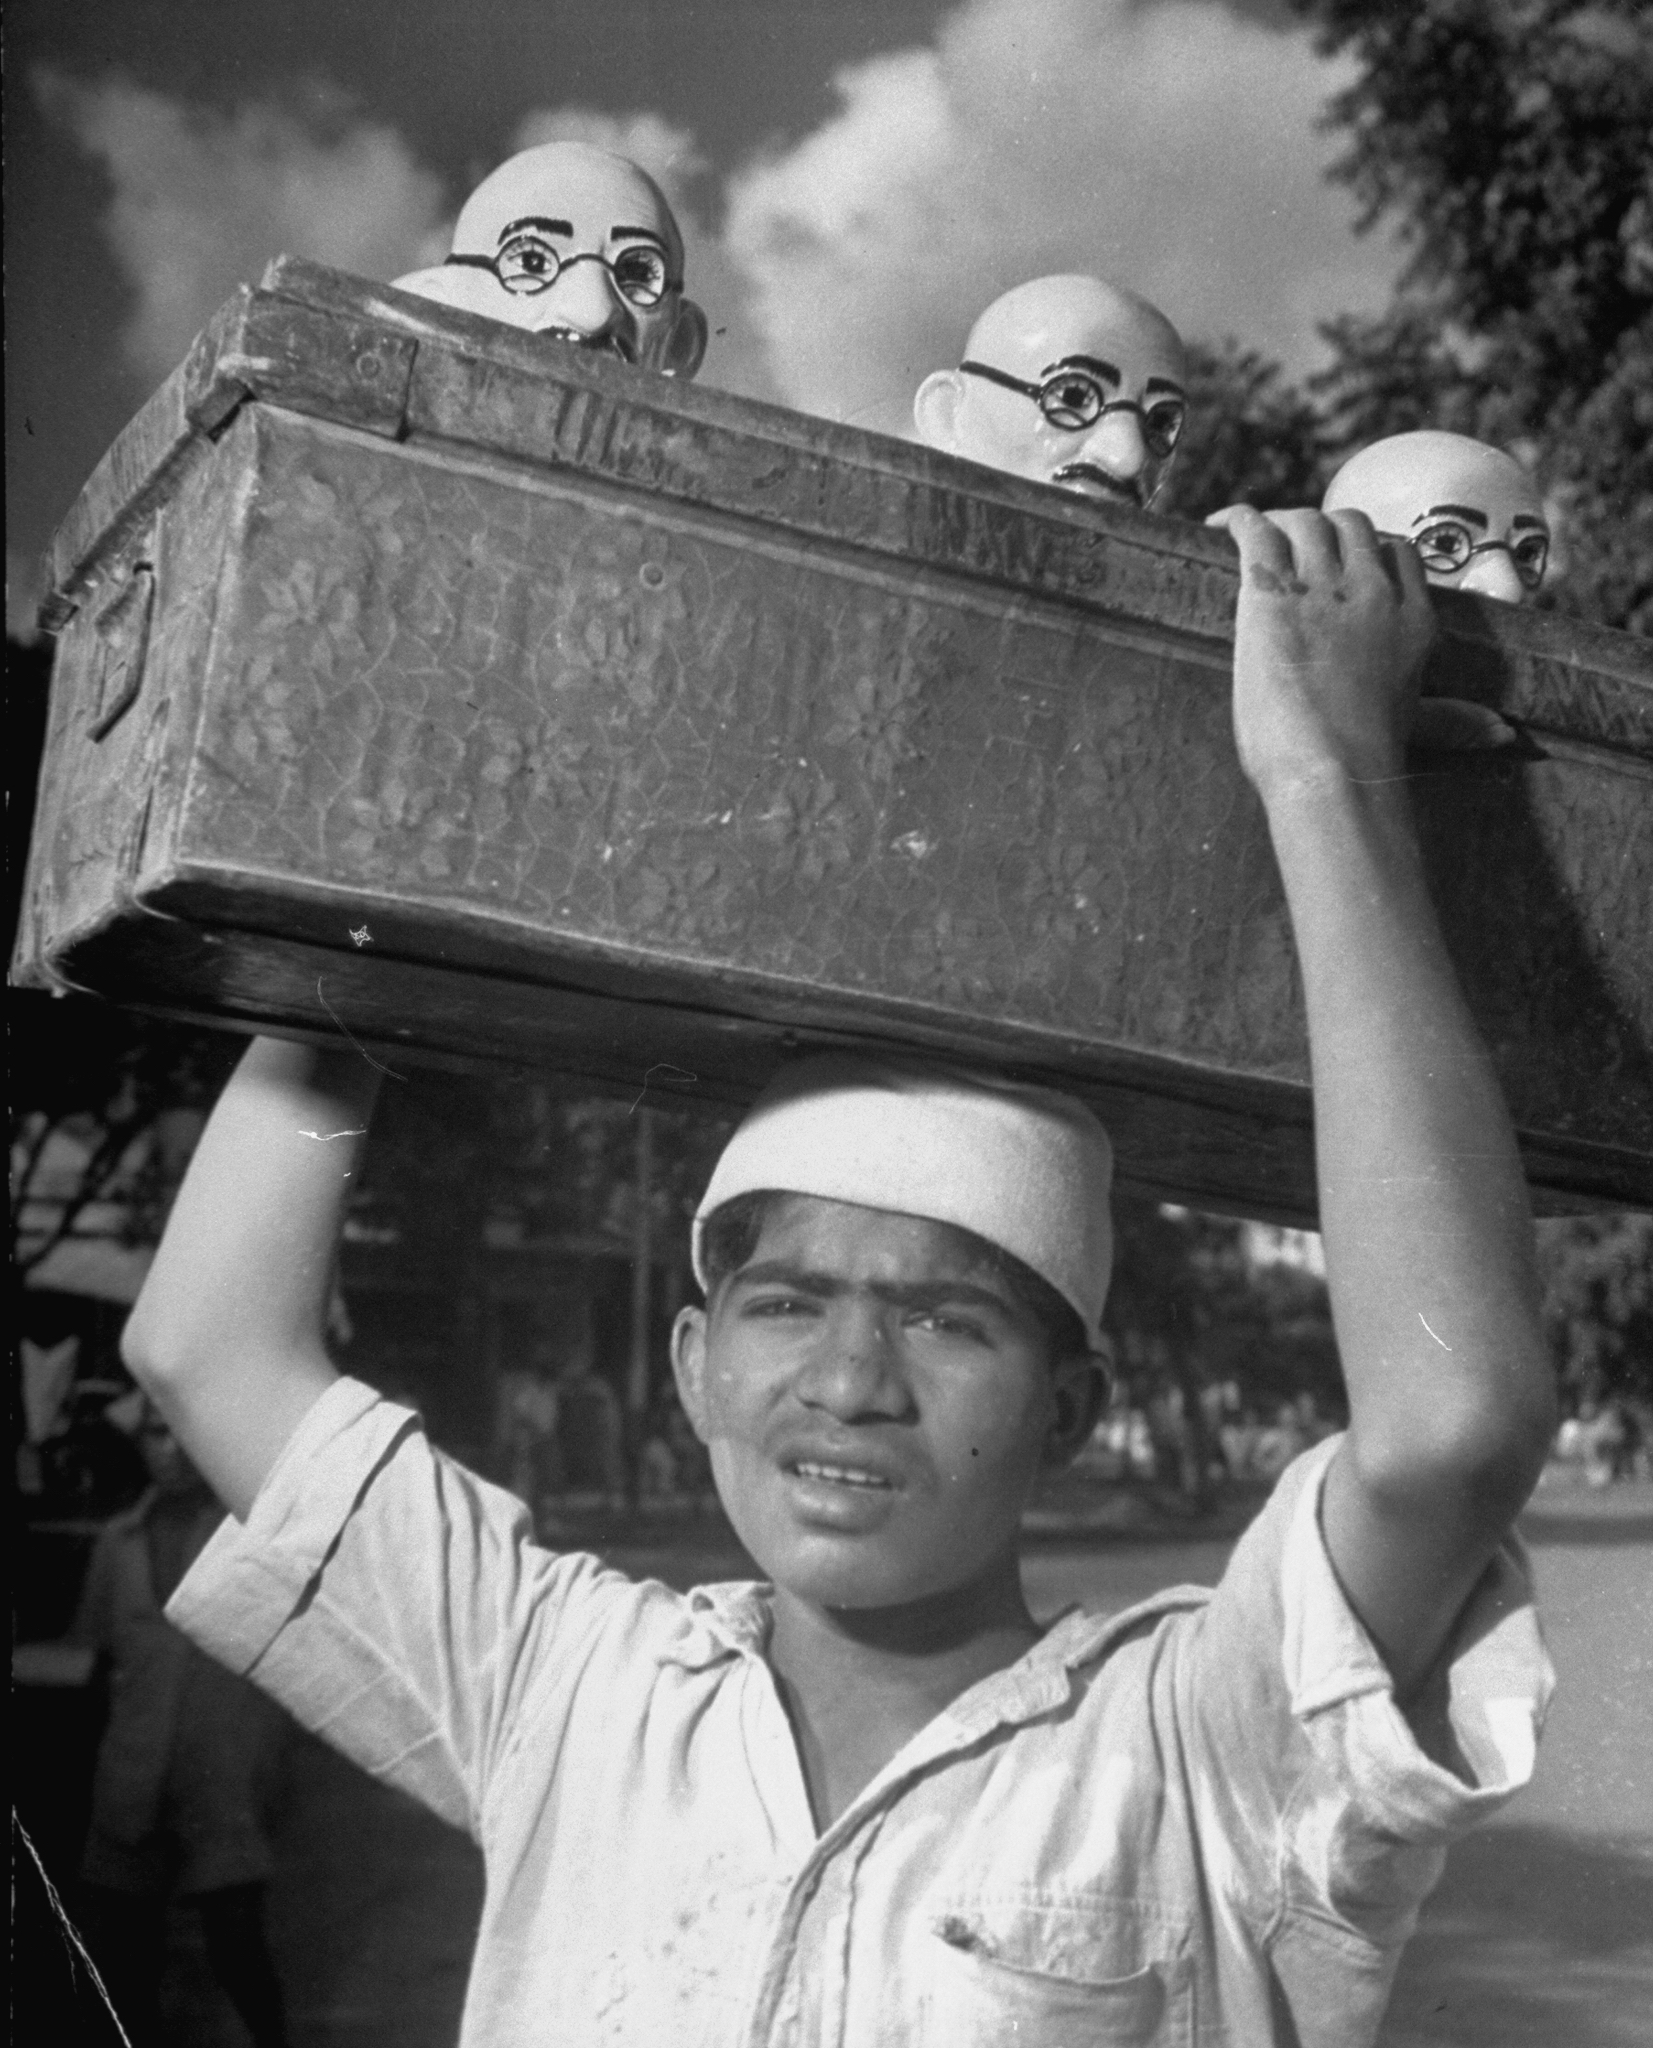 An Indian street vendor sells Gandhi figures in 1946.